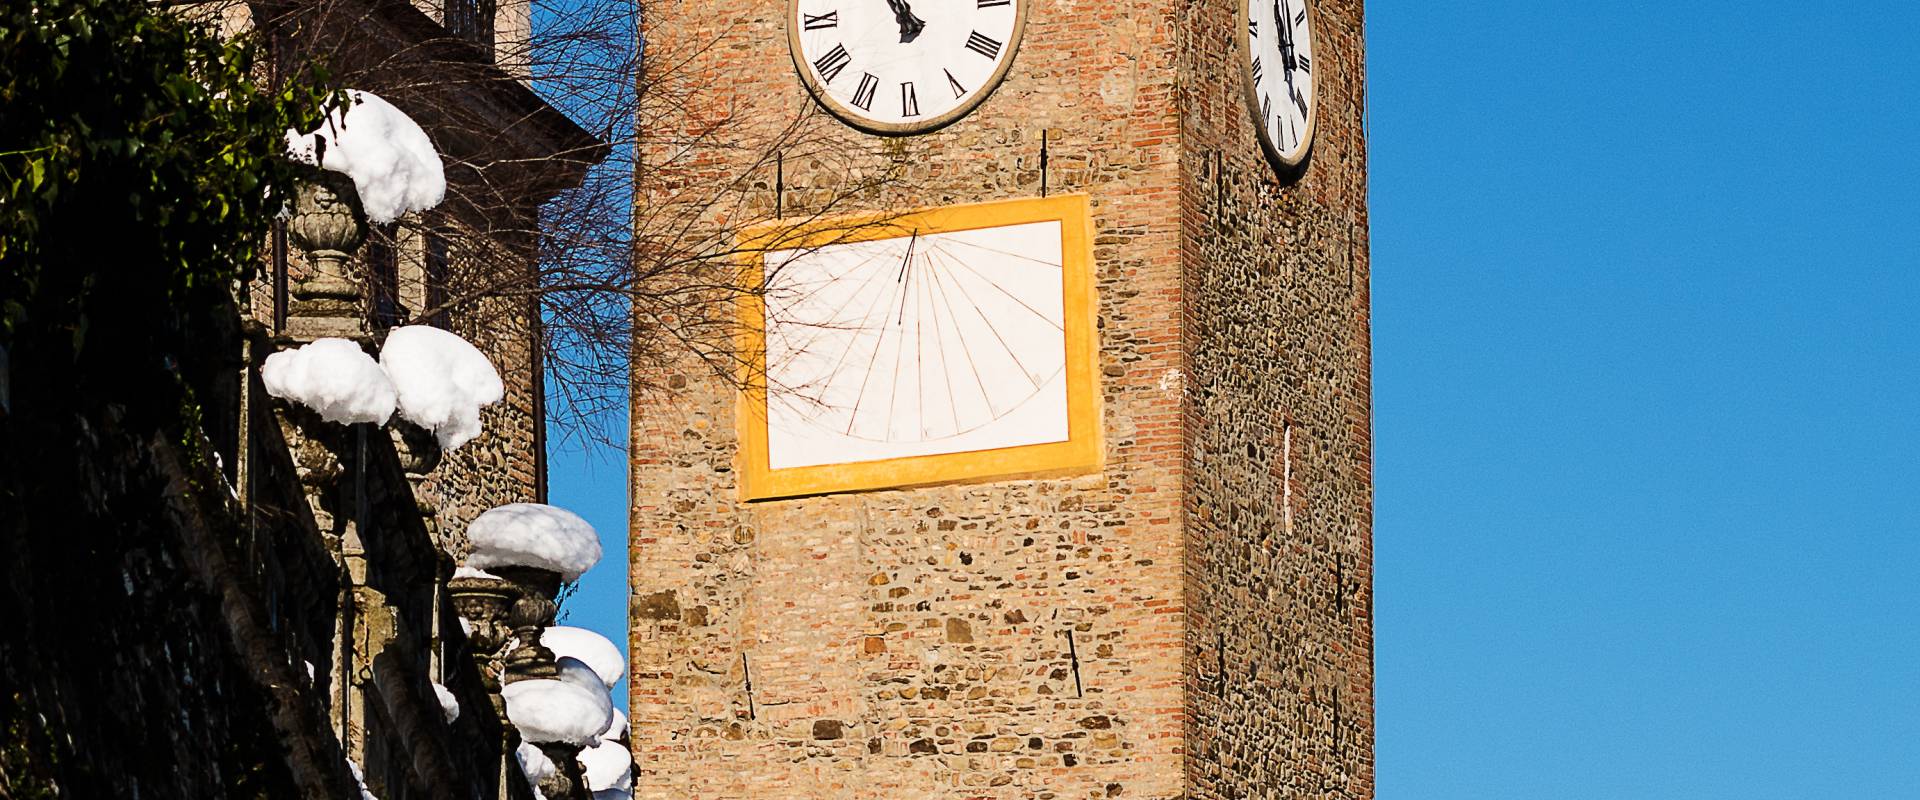 Torre dell'orologio - Piazza Roma foto di Loris.tagliazucchi